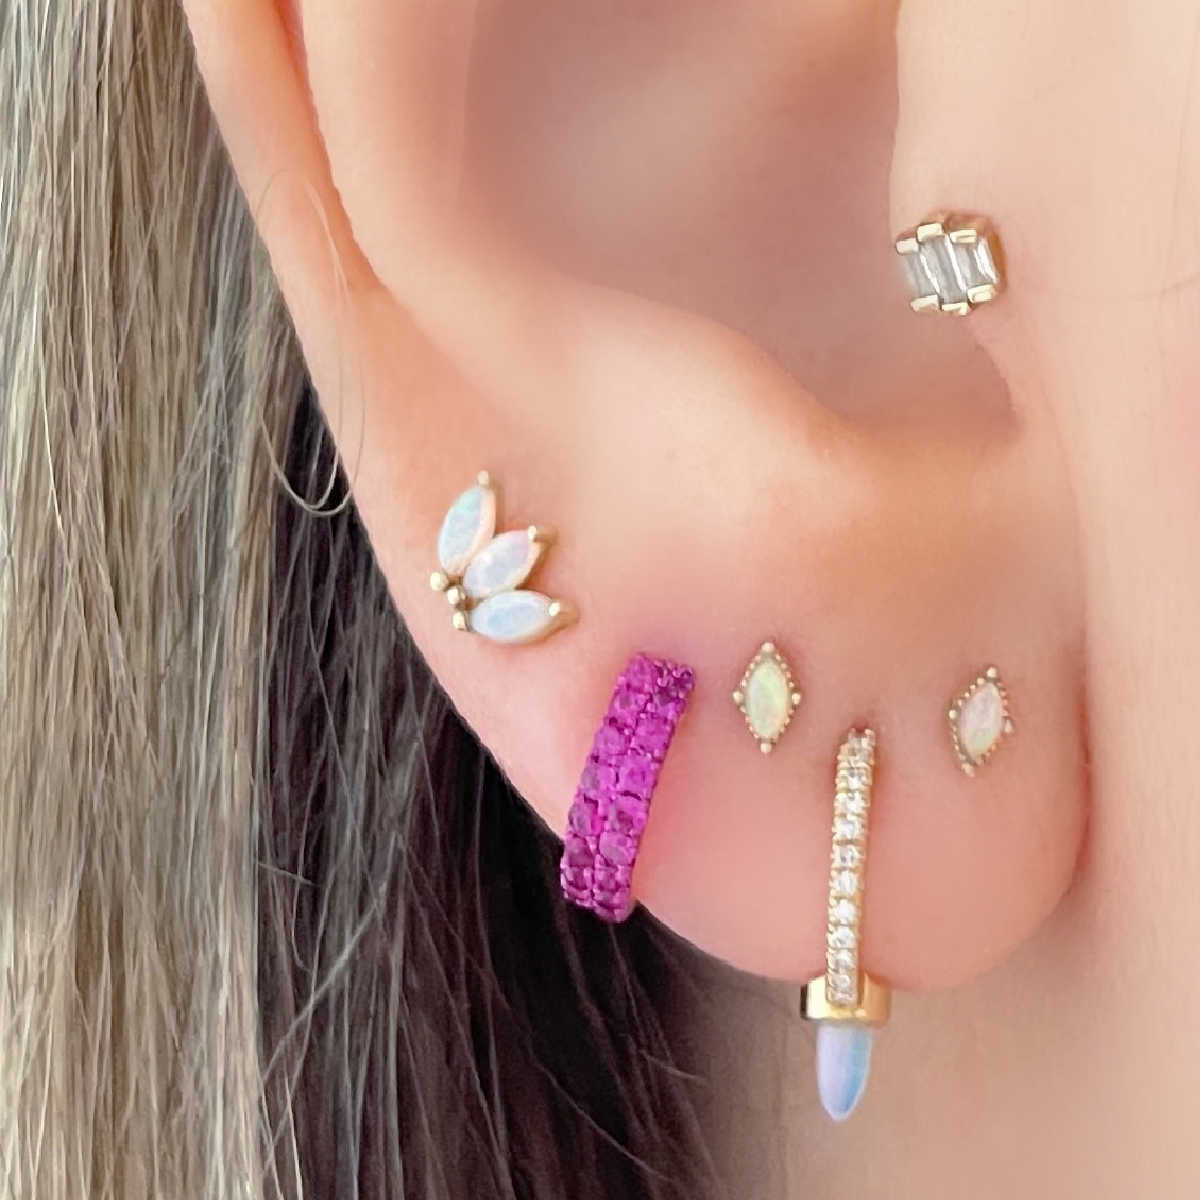 Diamond & Opal Flat Back Piercing Earring